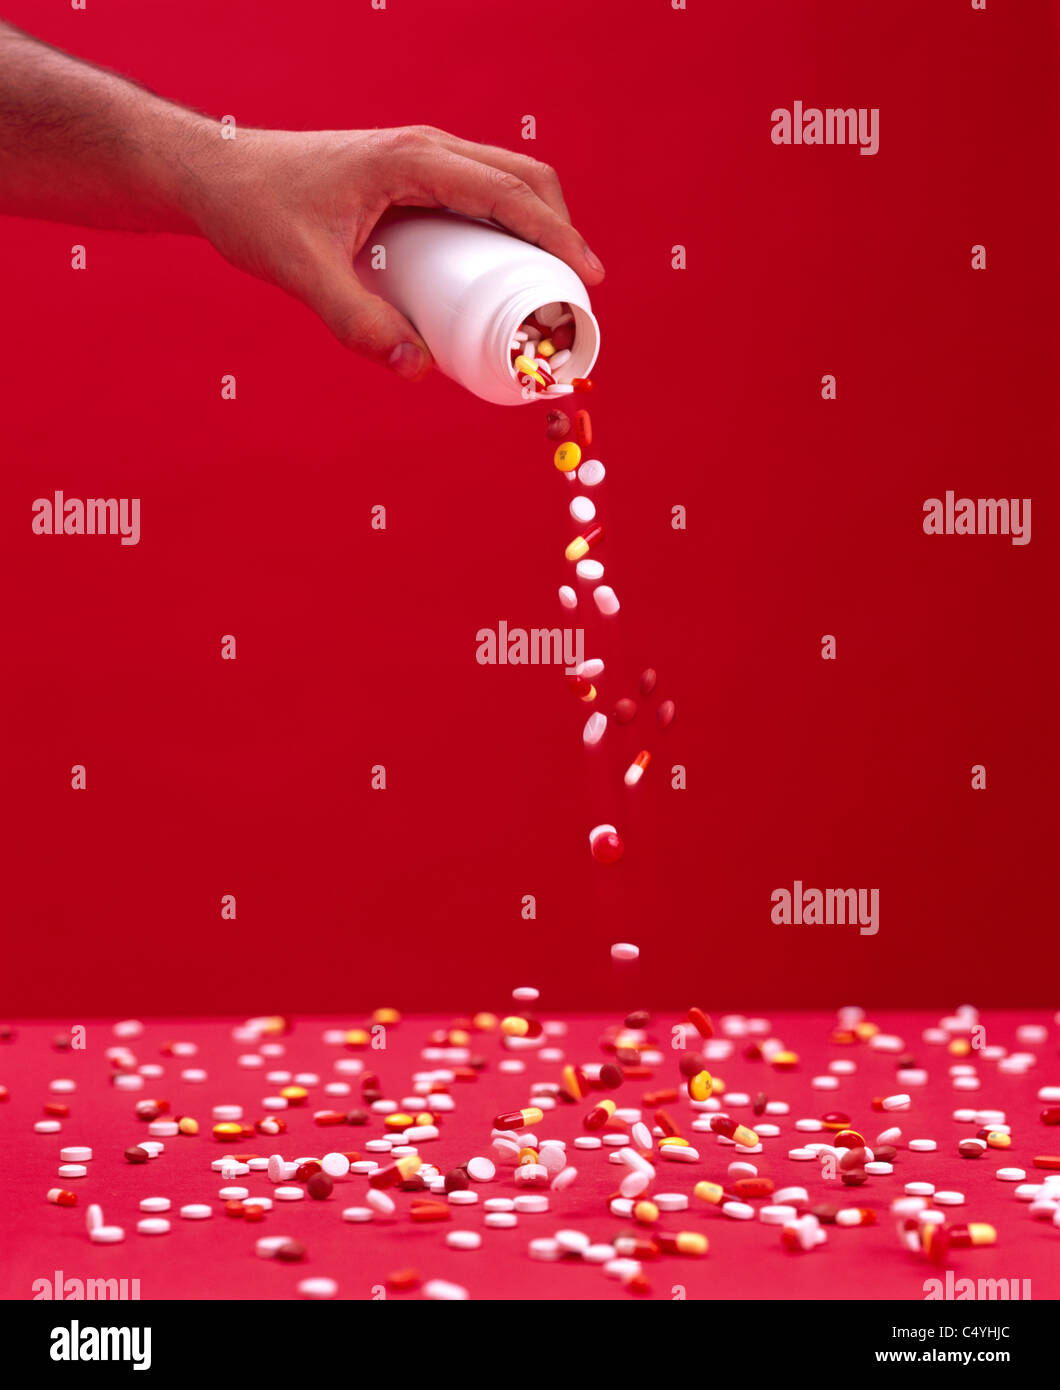 Una mano de hombre sosteniendo un contenedor mientras estudiando píldoras y tabletas sobre una superficie roja dispersos Foto de stock